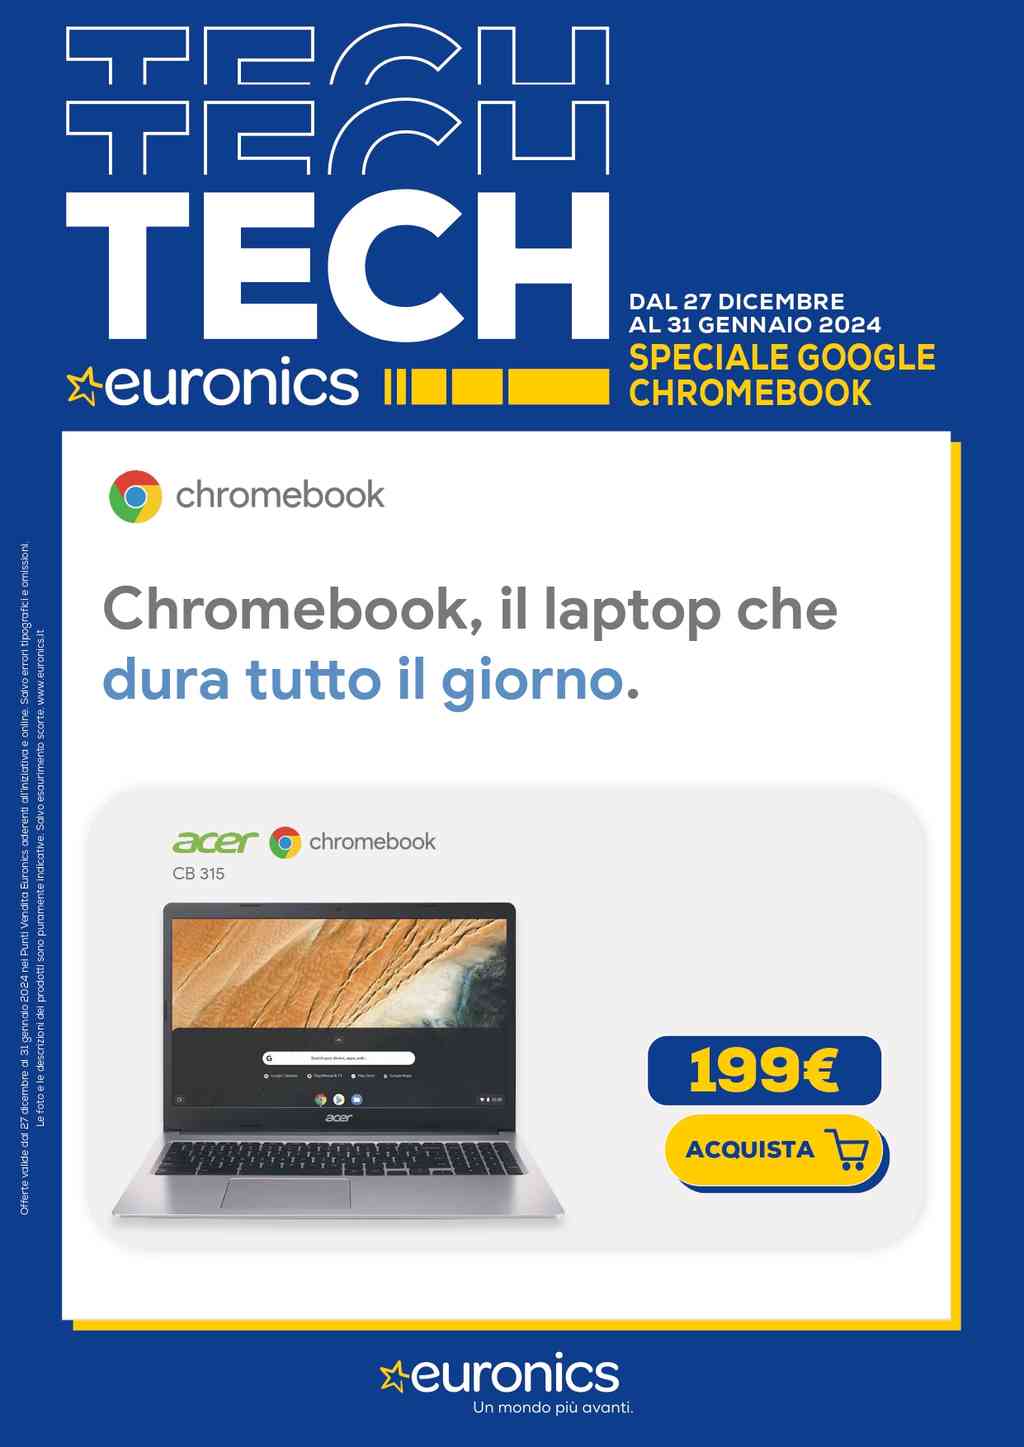 Volantino Euronics Speciale Chromebook dal 27 dicembre 2023 dal 31 gennaio 2024